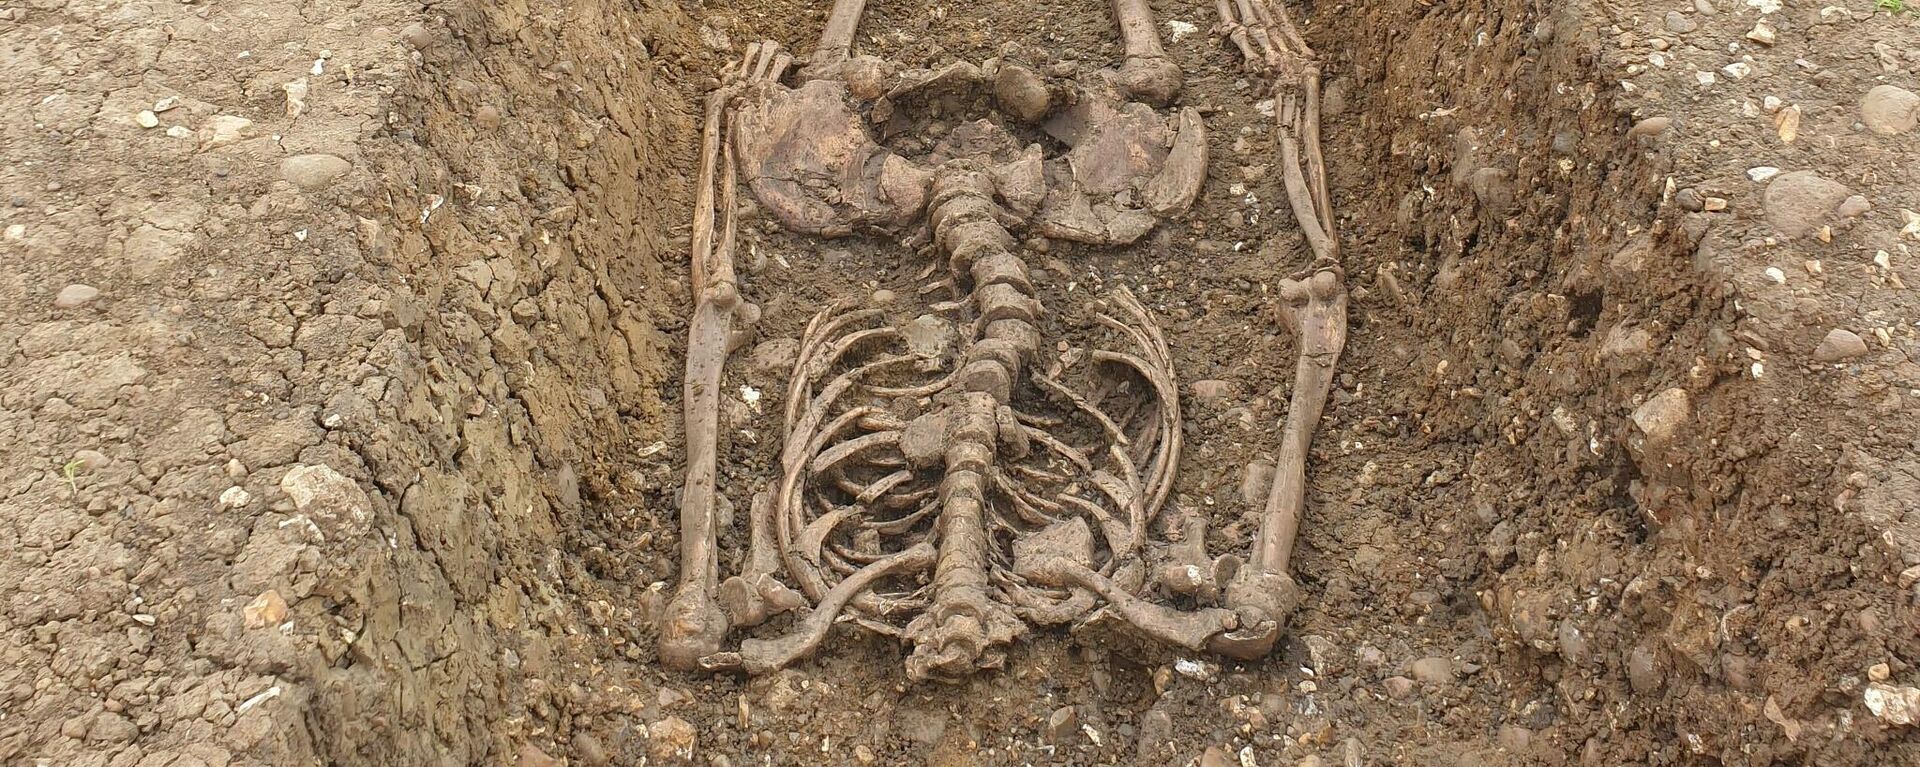 Los restos de una persona enterrada decapitada en la antigua ciudad romana hallada en Reino Unido. - Sputnik Mundo, 1920, 08.02.2022